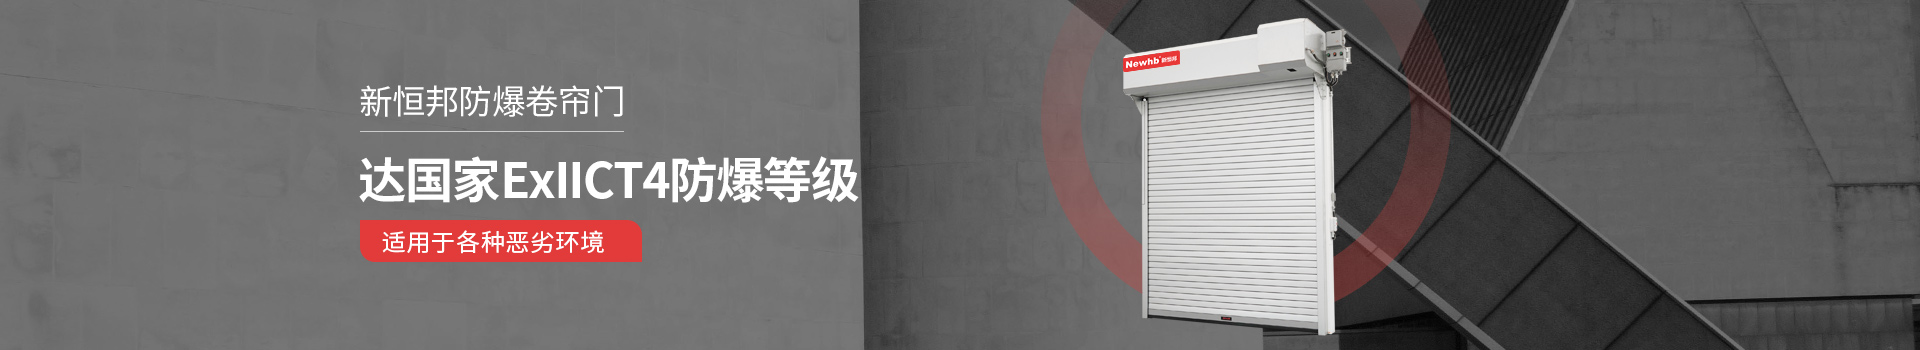 中国有限公司官网华球体育达国家ExllCT4防爆等级